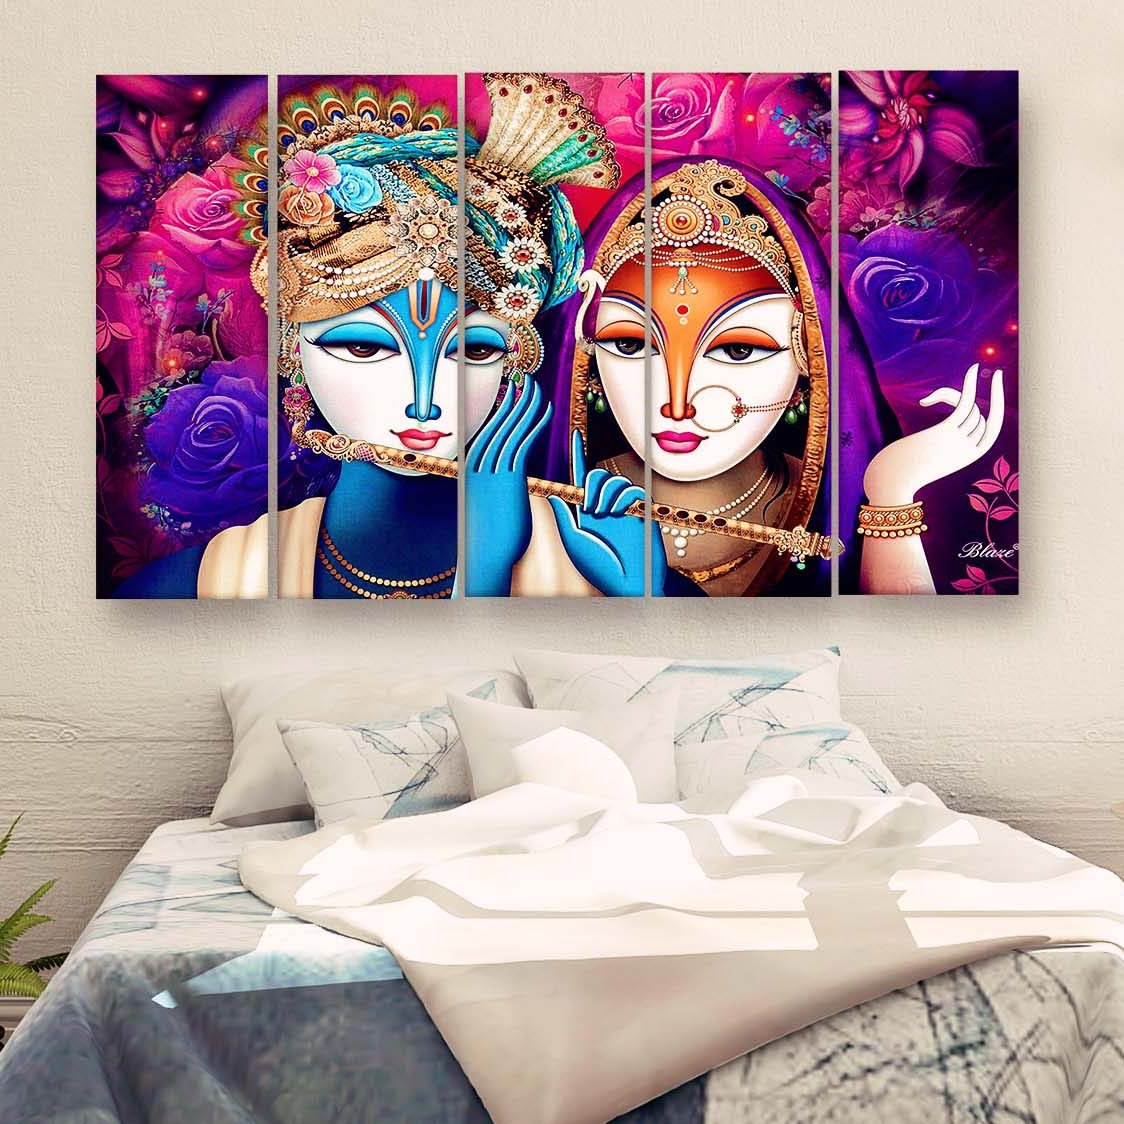 Casperme Radha Krishna Multiple Frames Wall Painting For Living Room,